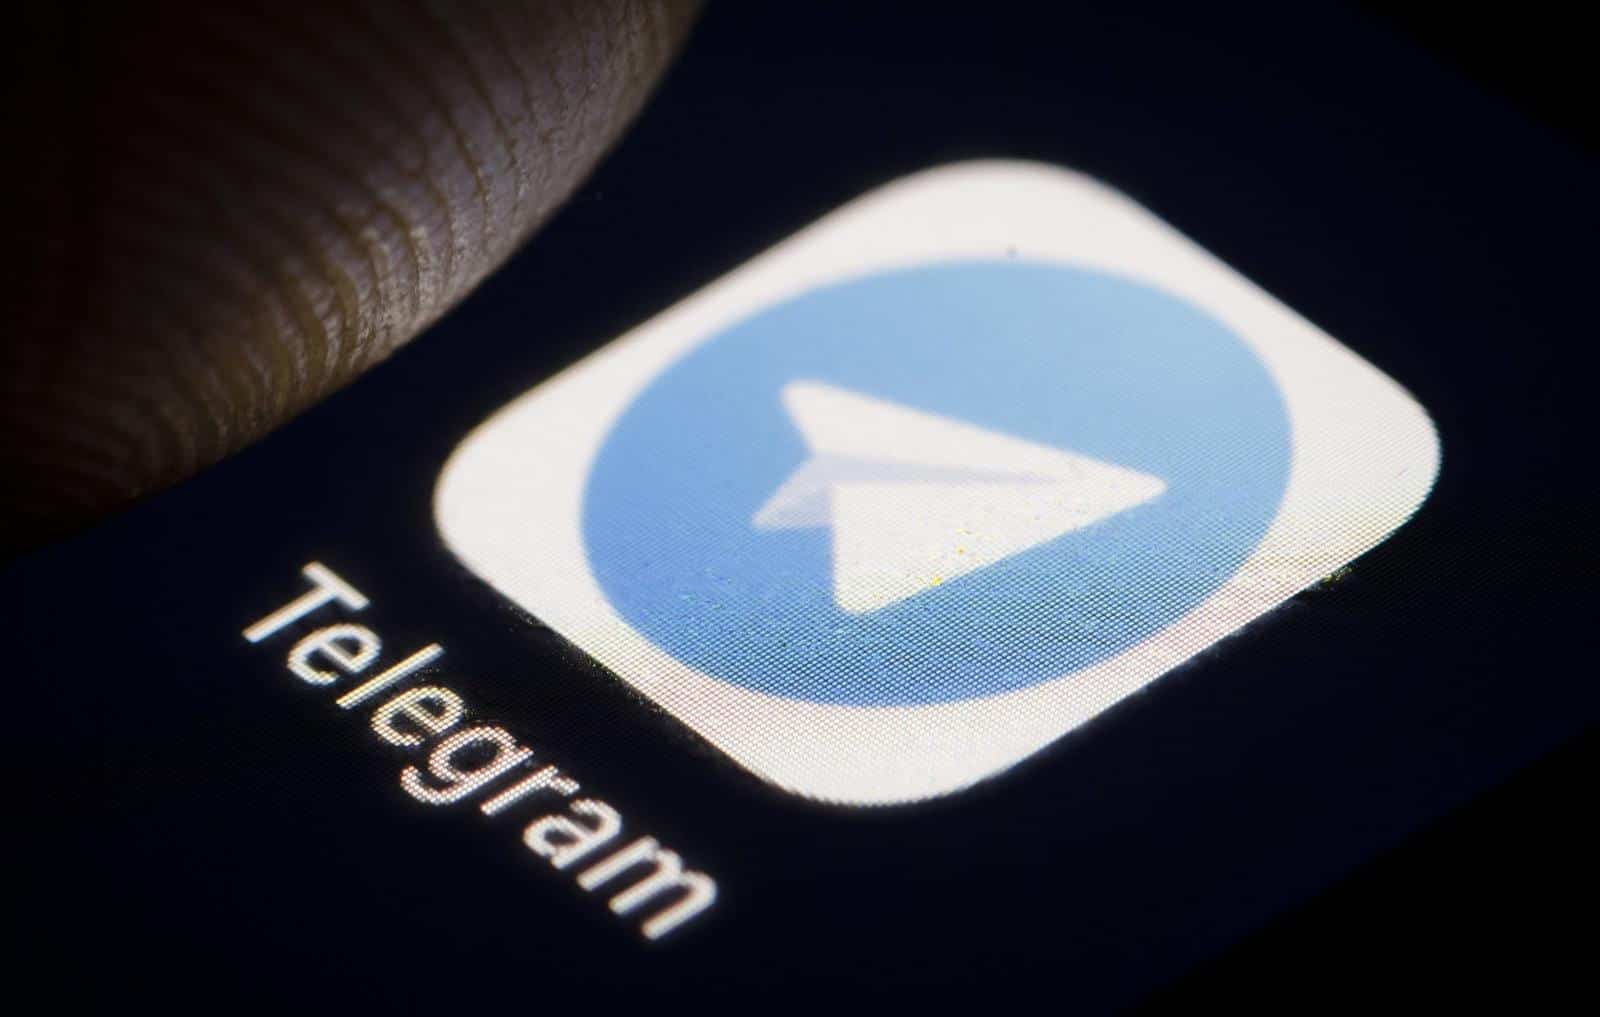 Opinião] Afinal de contas, o Telegram é seguro? - Olhar Digital